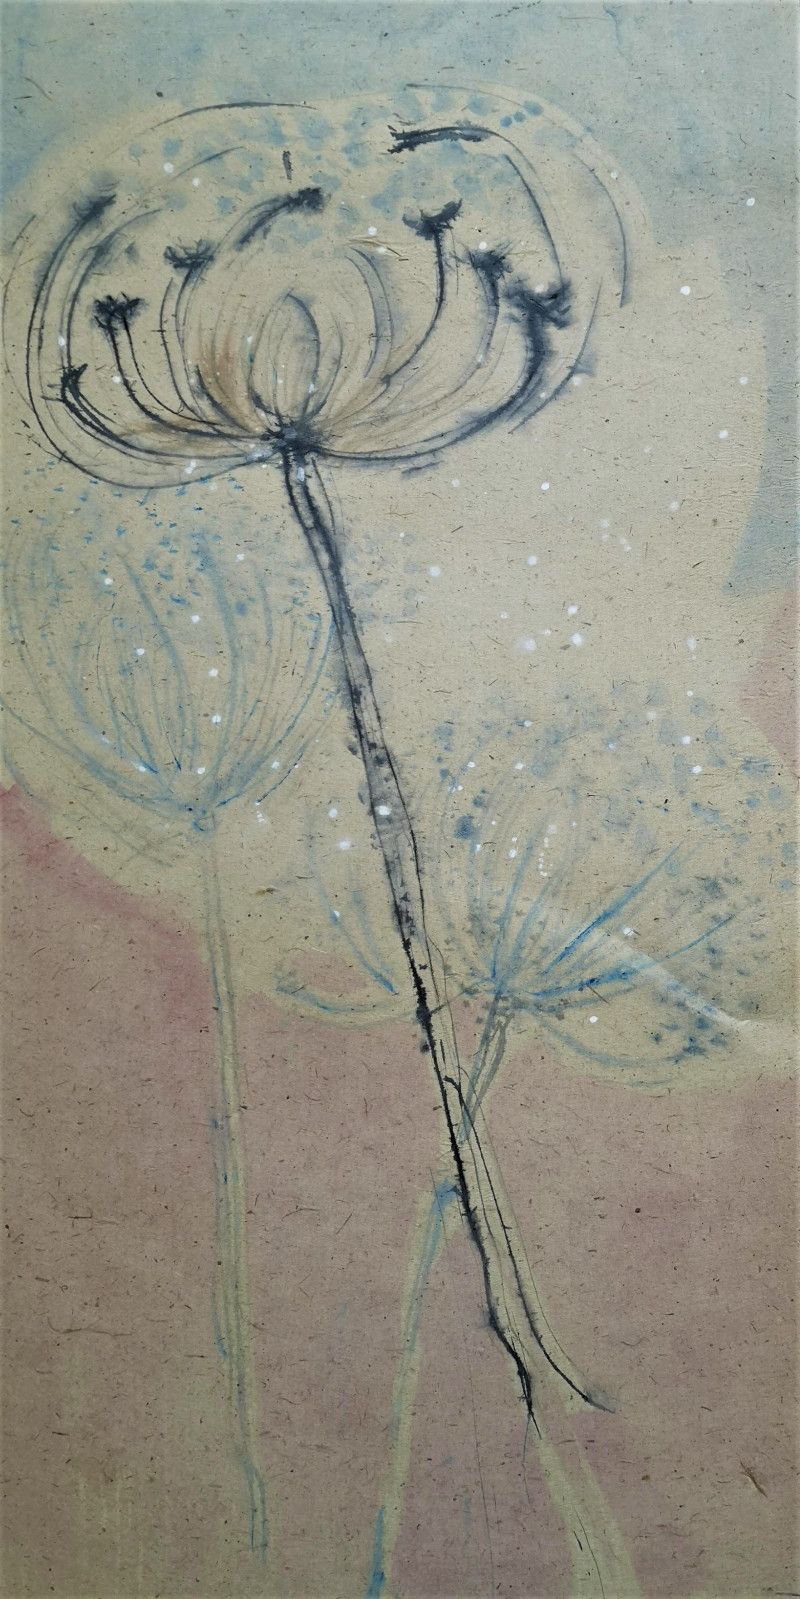 Jūra Vaškevičiūtė tapytas paveikslas Flowers 101, Kaligrafija - Rytų tapyba , paveikslai internetu